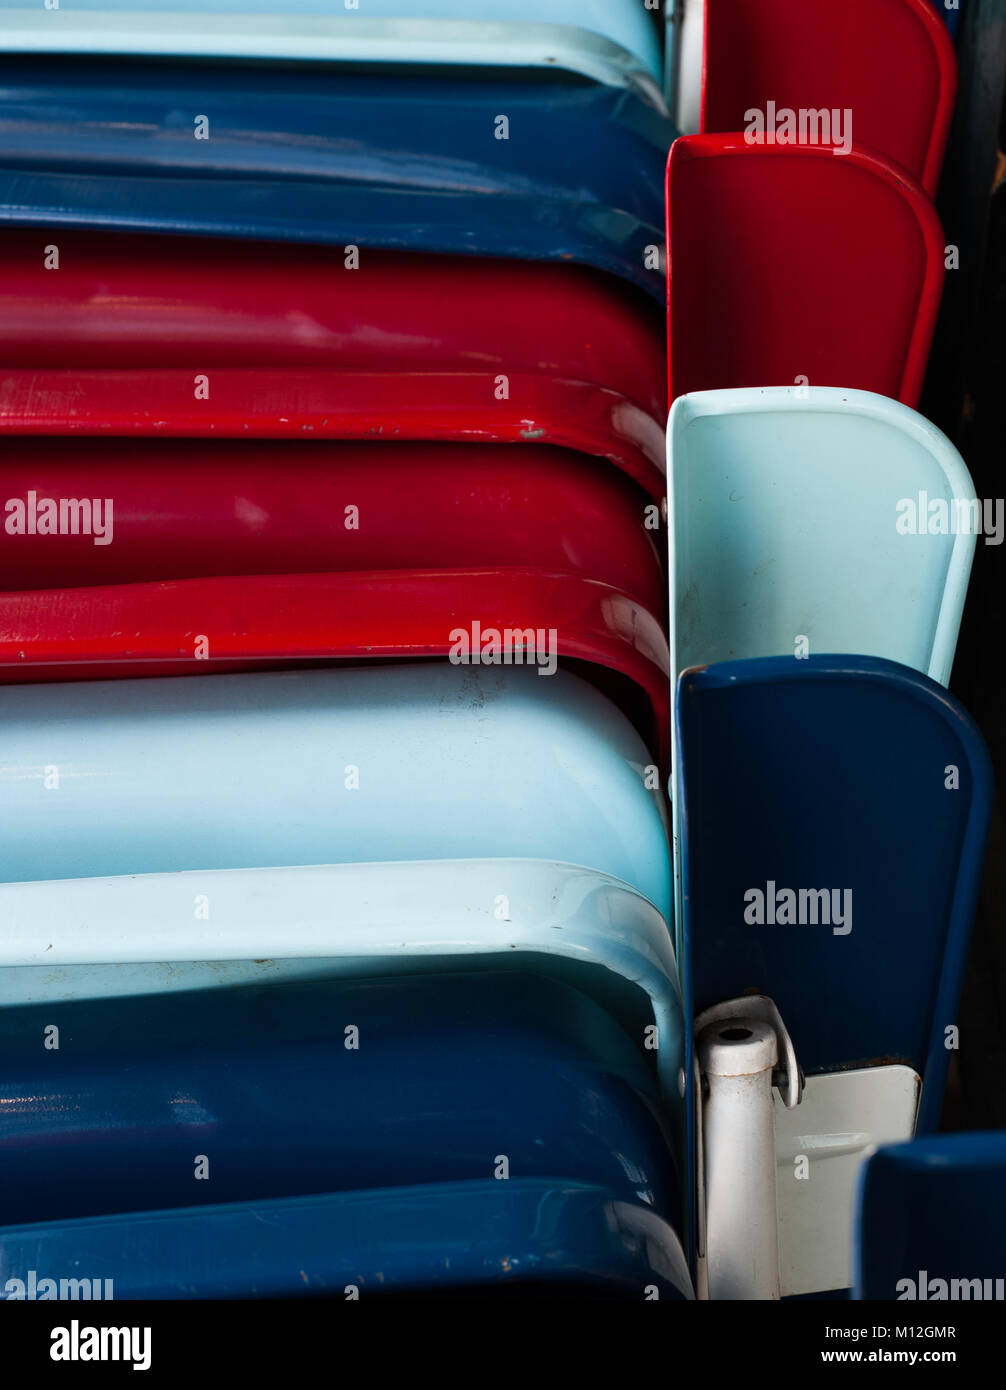 Rojo, blanco y sillas azules. Foto de stock